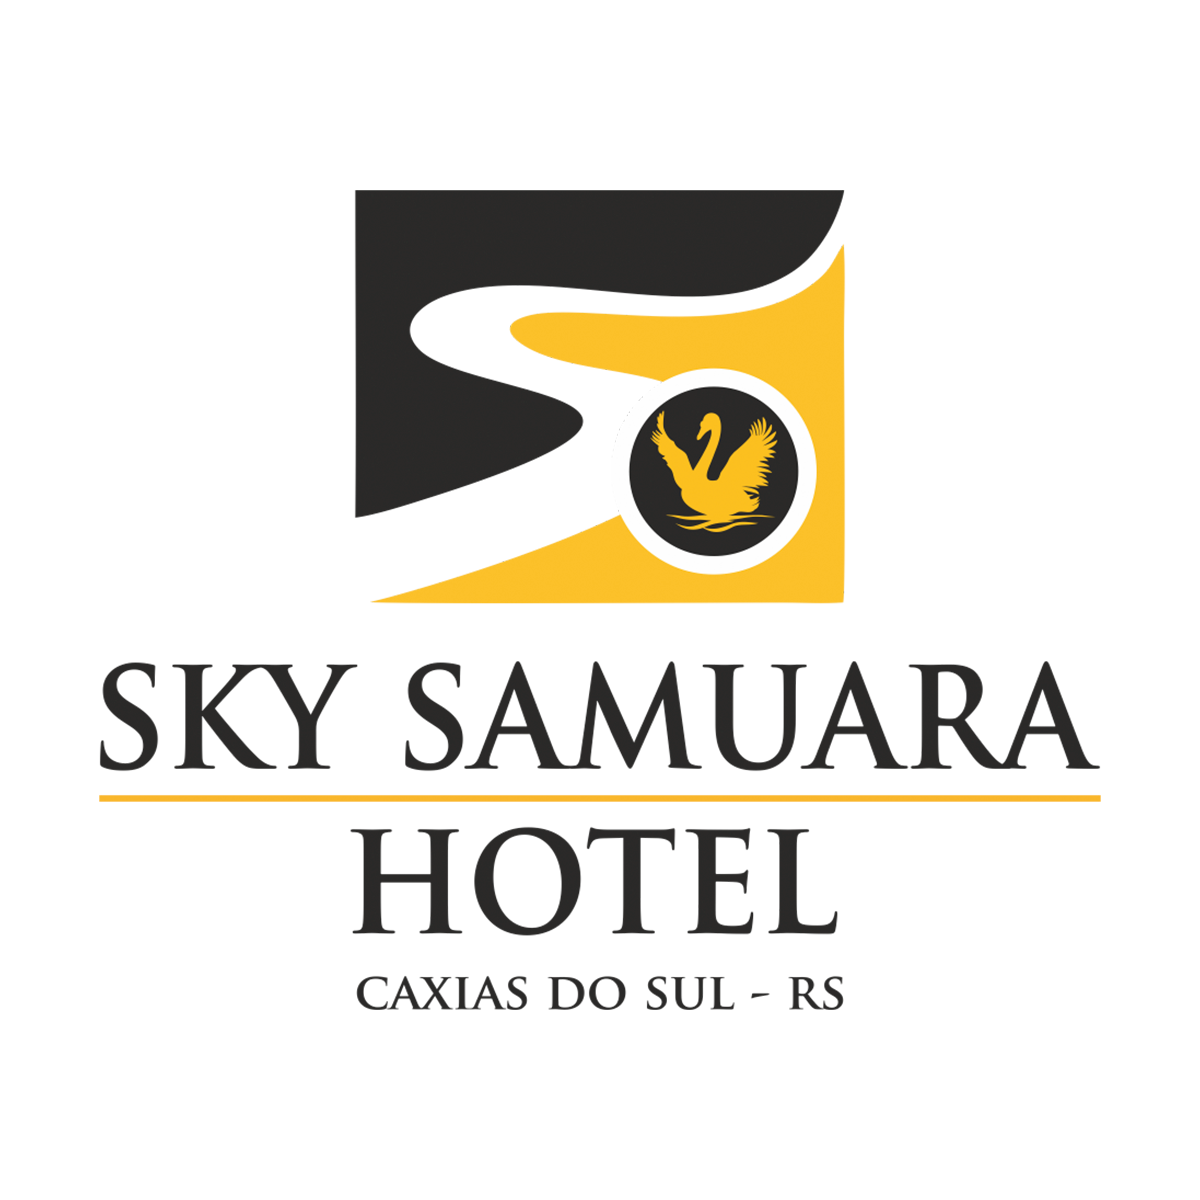 Projetos Gastronmicos do Hotel Samuara Sky